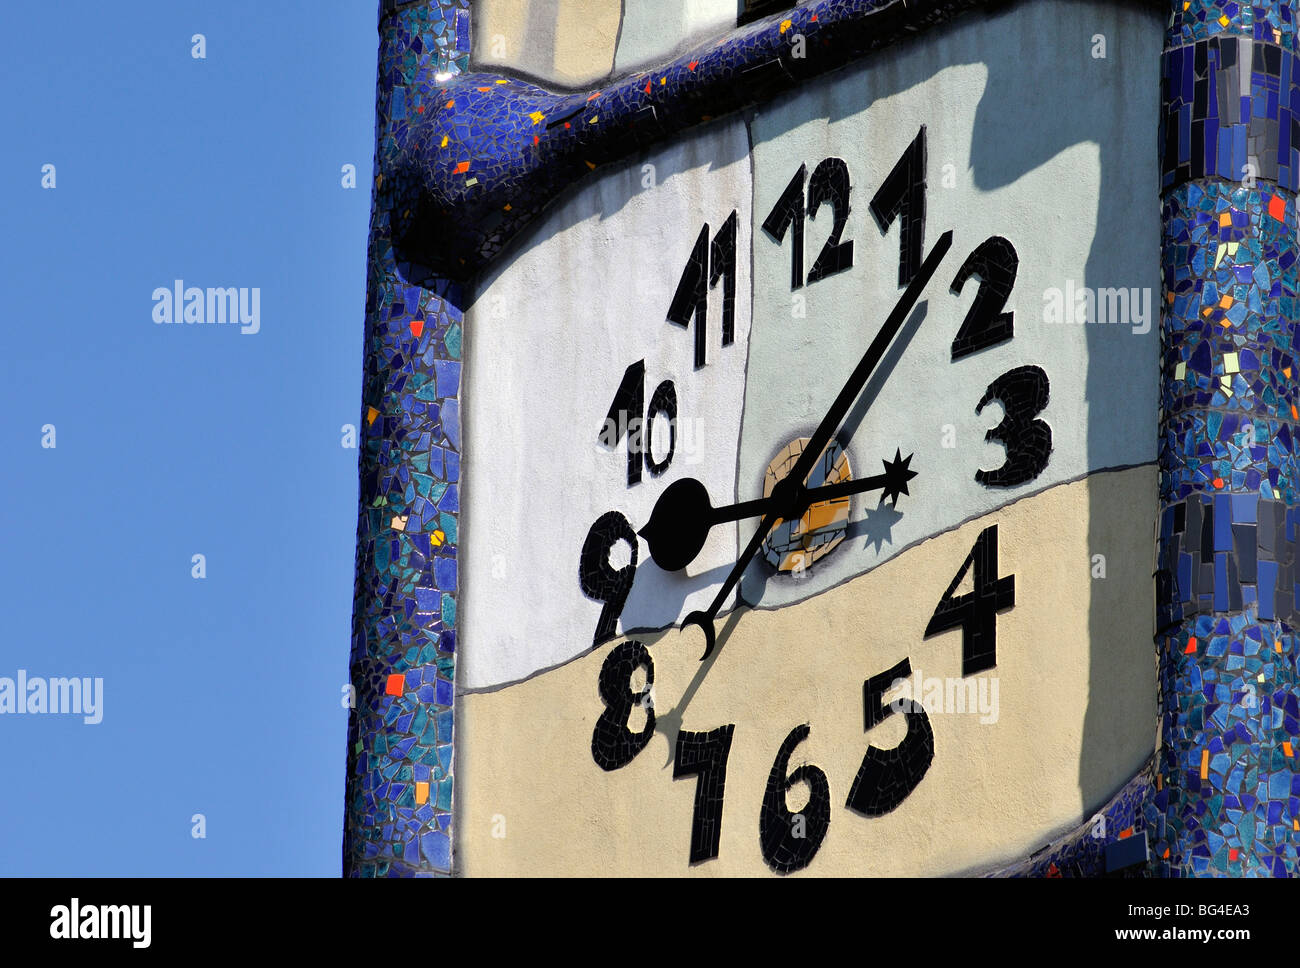 Detail der Uhr im St. Barbara-Kirche (Kirche der Heiligen Barbara)  renoviert von Hundertwasser in Köflach, Steiermark, Österreich  Stockfotografie - Alamy